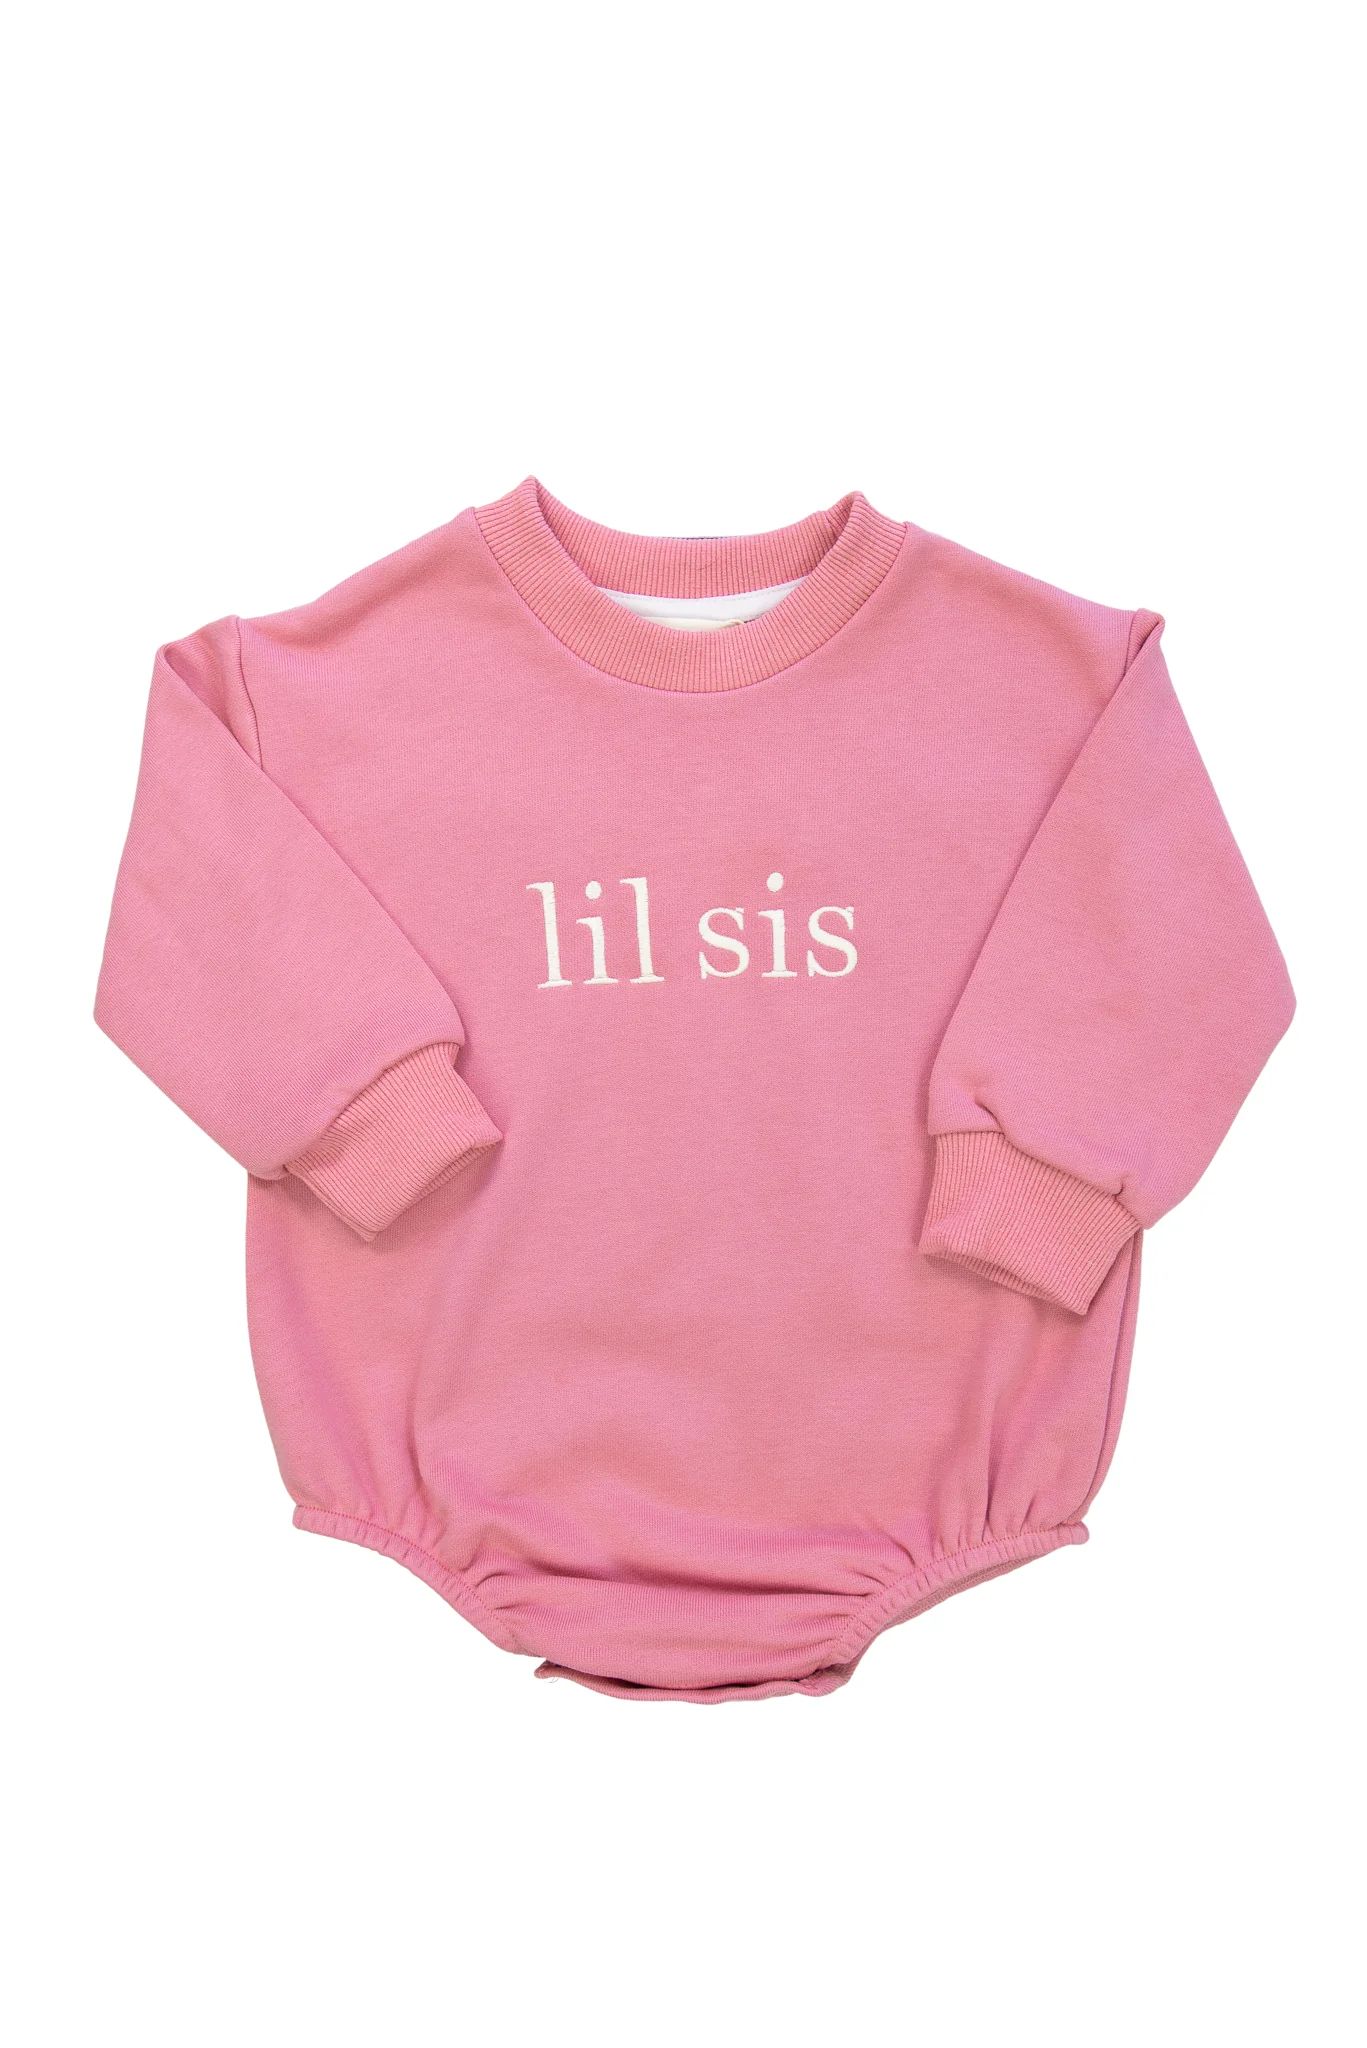 Girls Lil Sis Sweatshirt Bubble | Sugar Dumplin' Kids